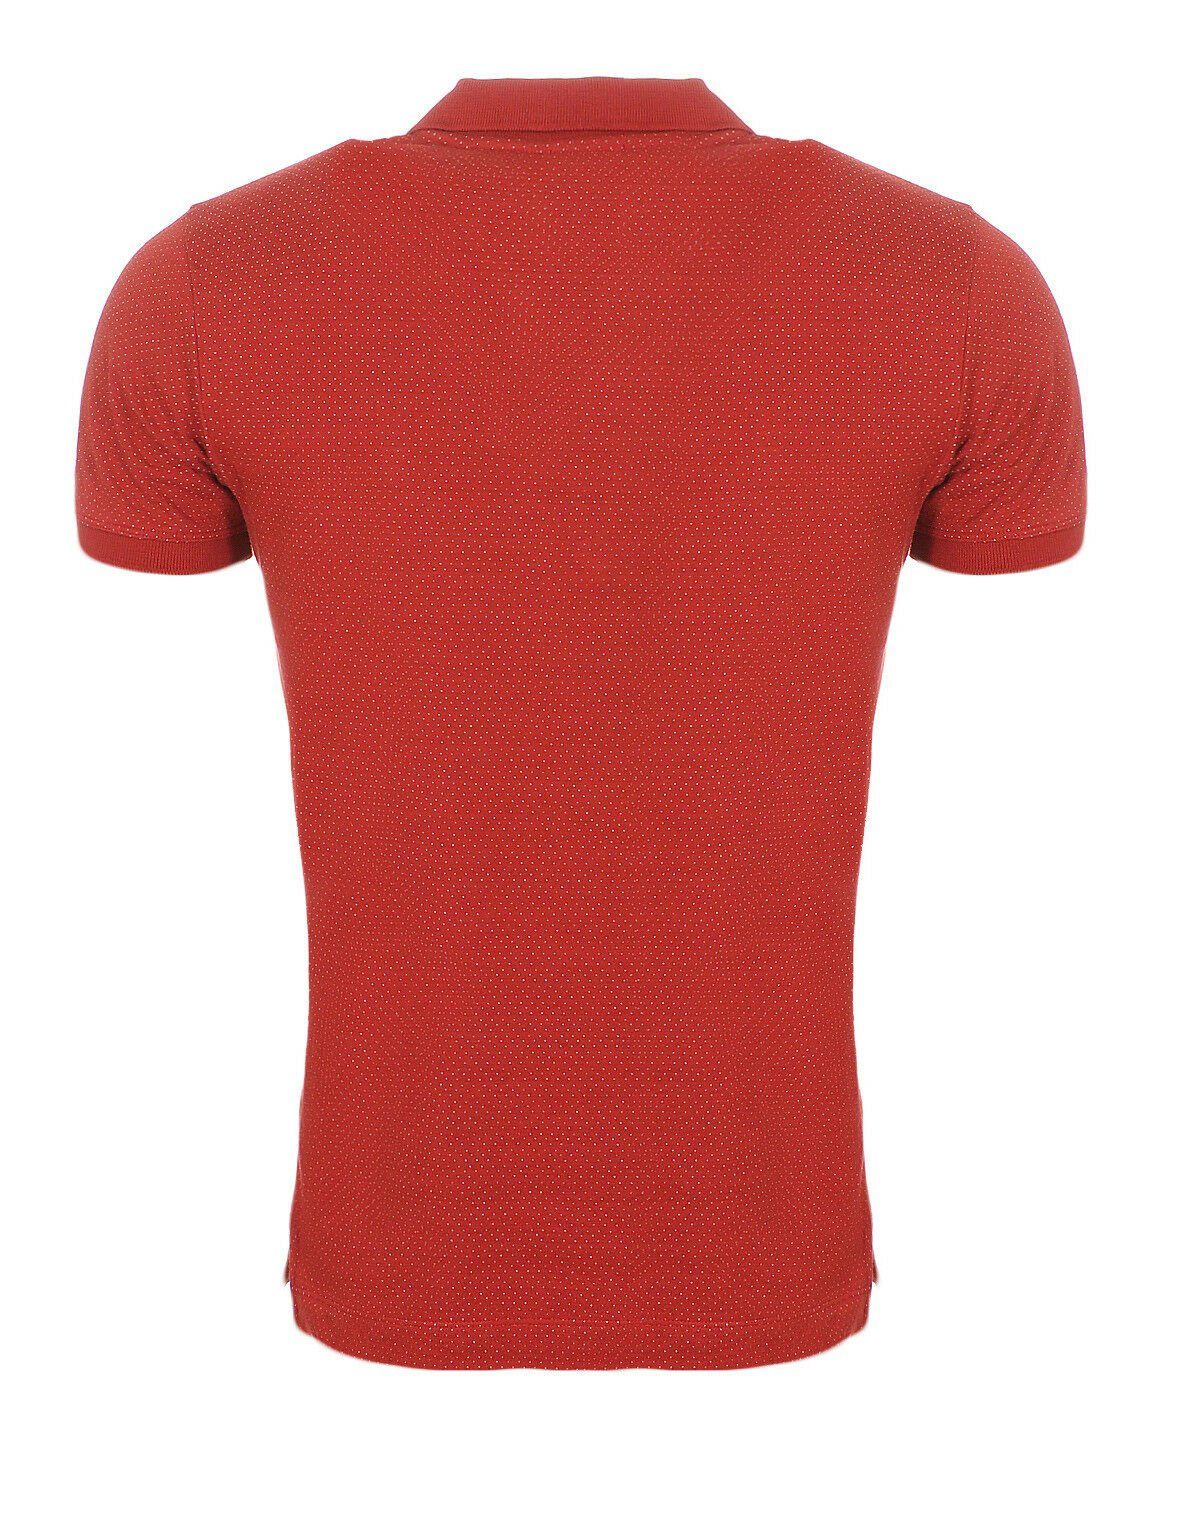 Diesel Poloshirt Diesel Herren Poloshirt Oberfläche mit Punkte, Muster unifarben, bepunktet Brustbereich, im Labelstitching T-KALAR-DOTS Rundhalsausschnitt, Rot